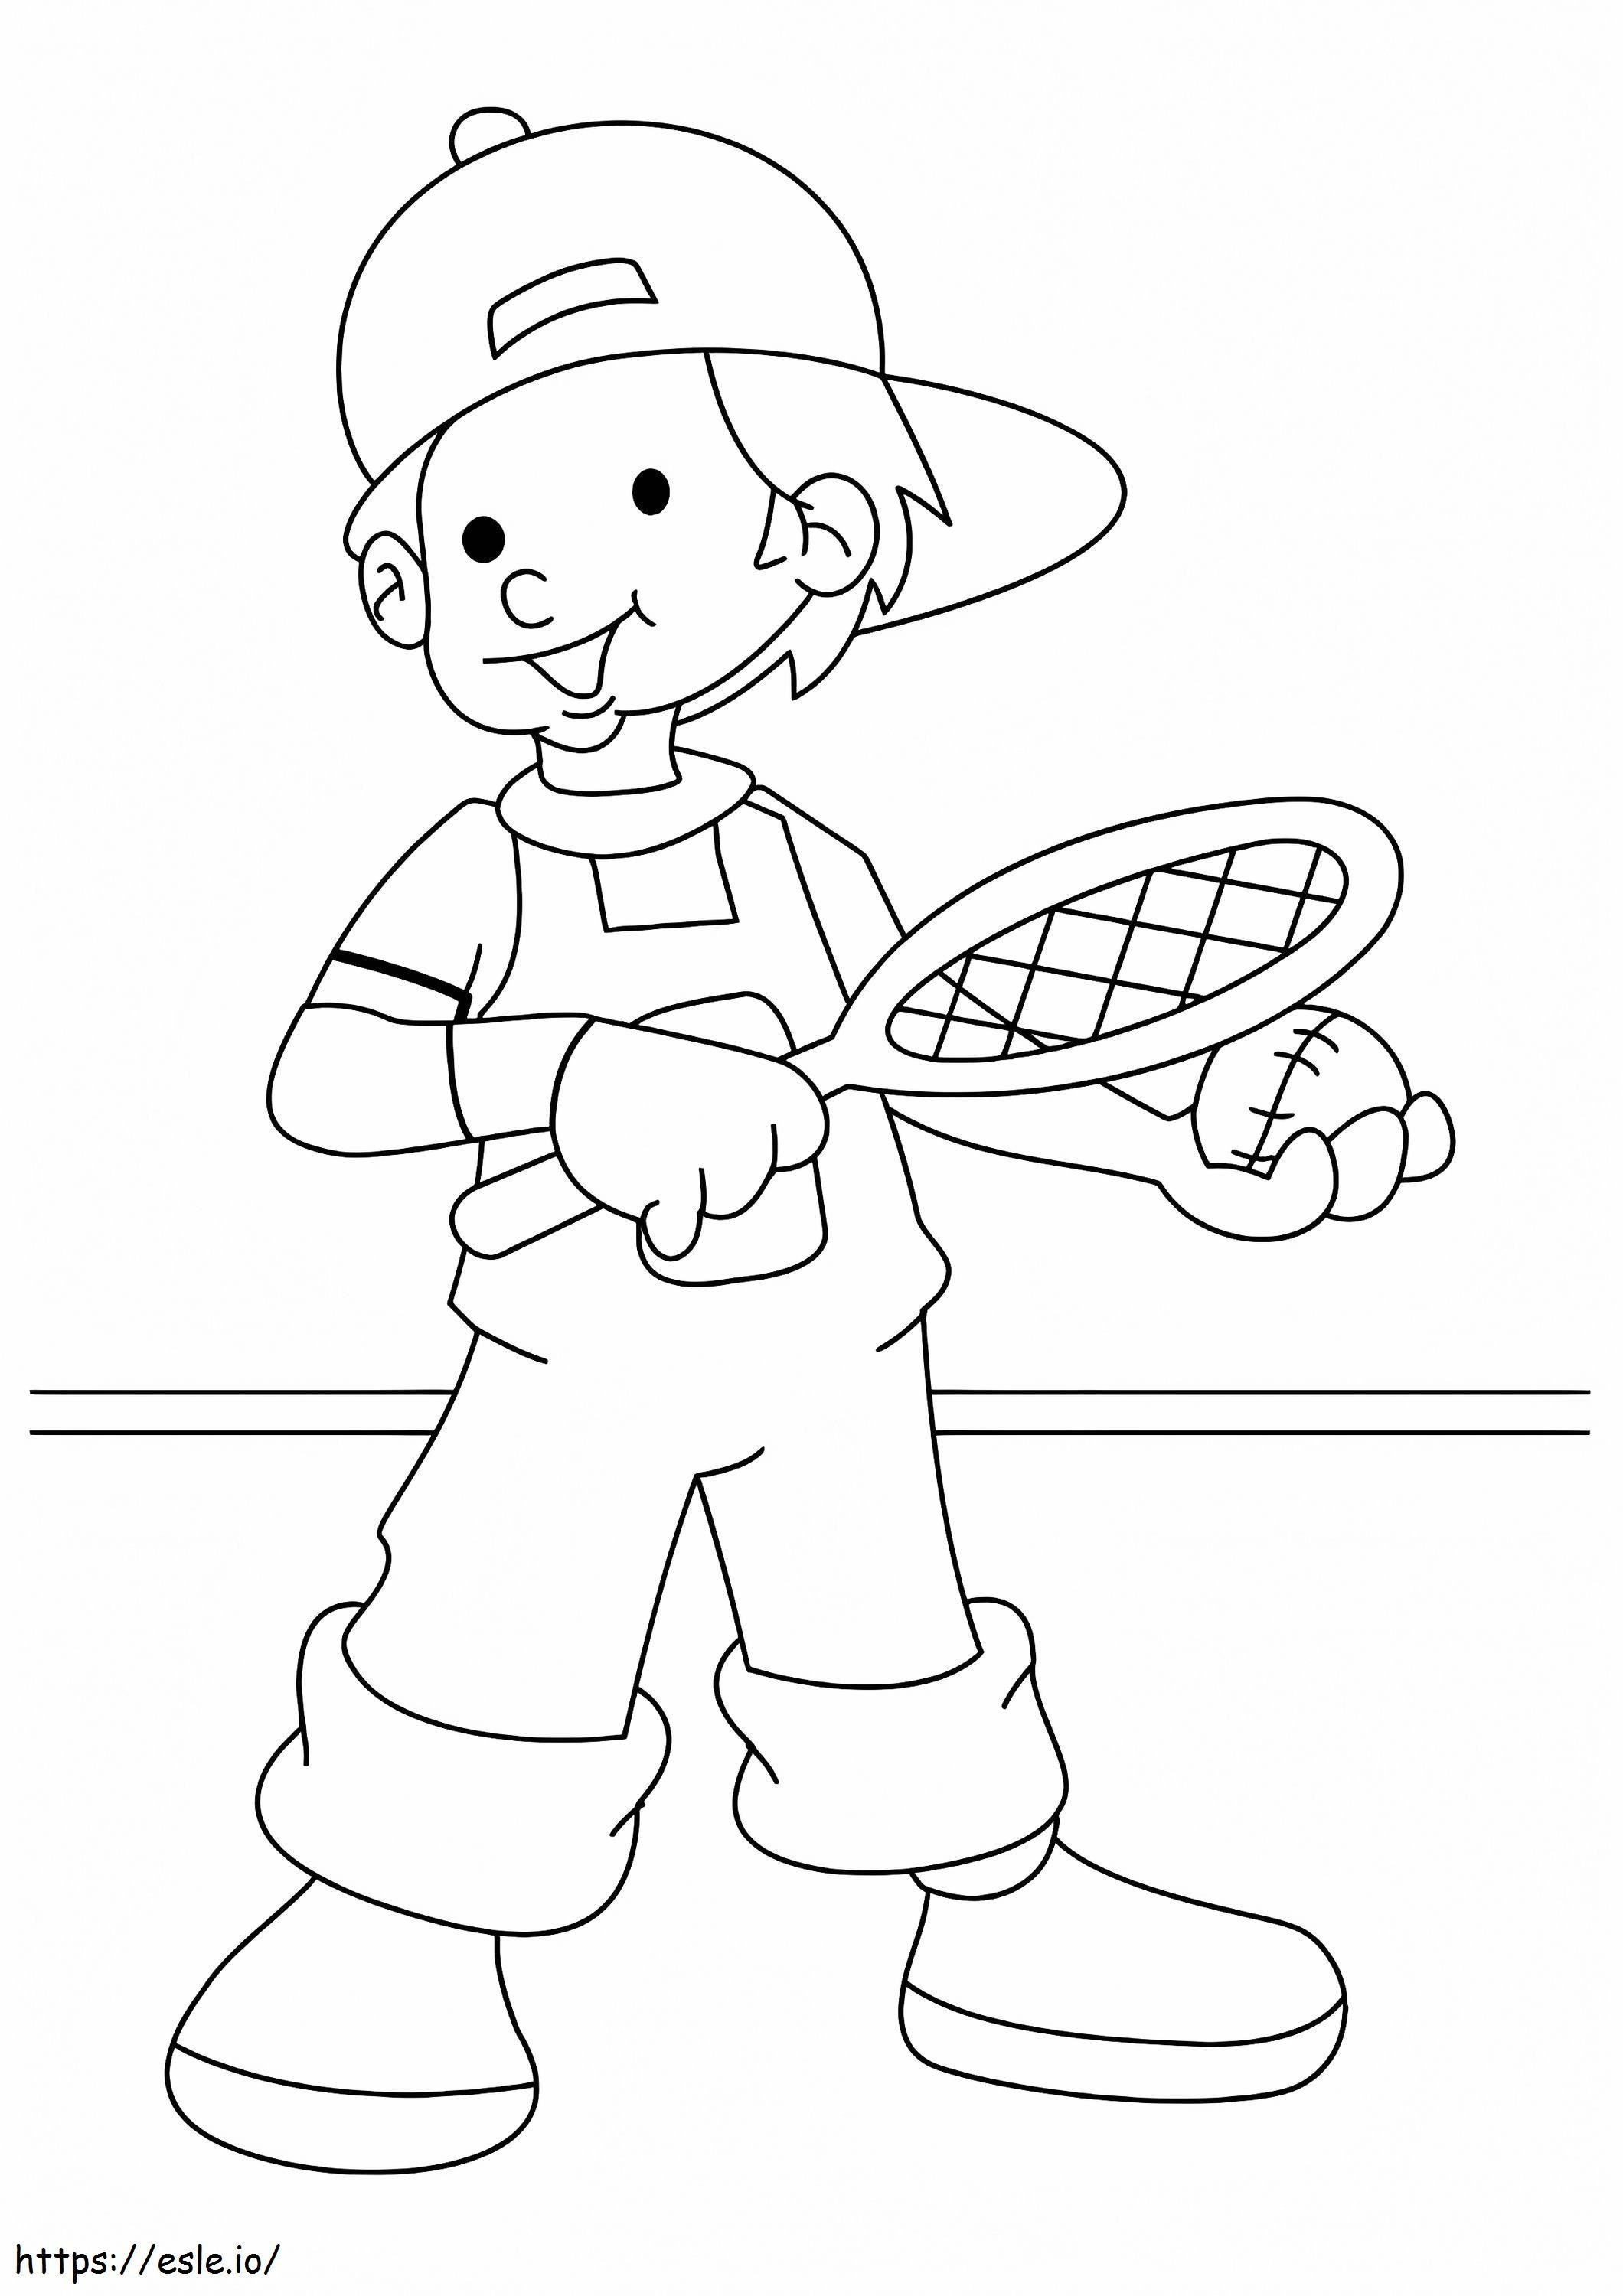 1526205895 Der Junge spielt Tennis A4 ausmalbilder